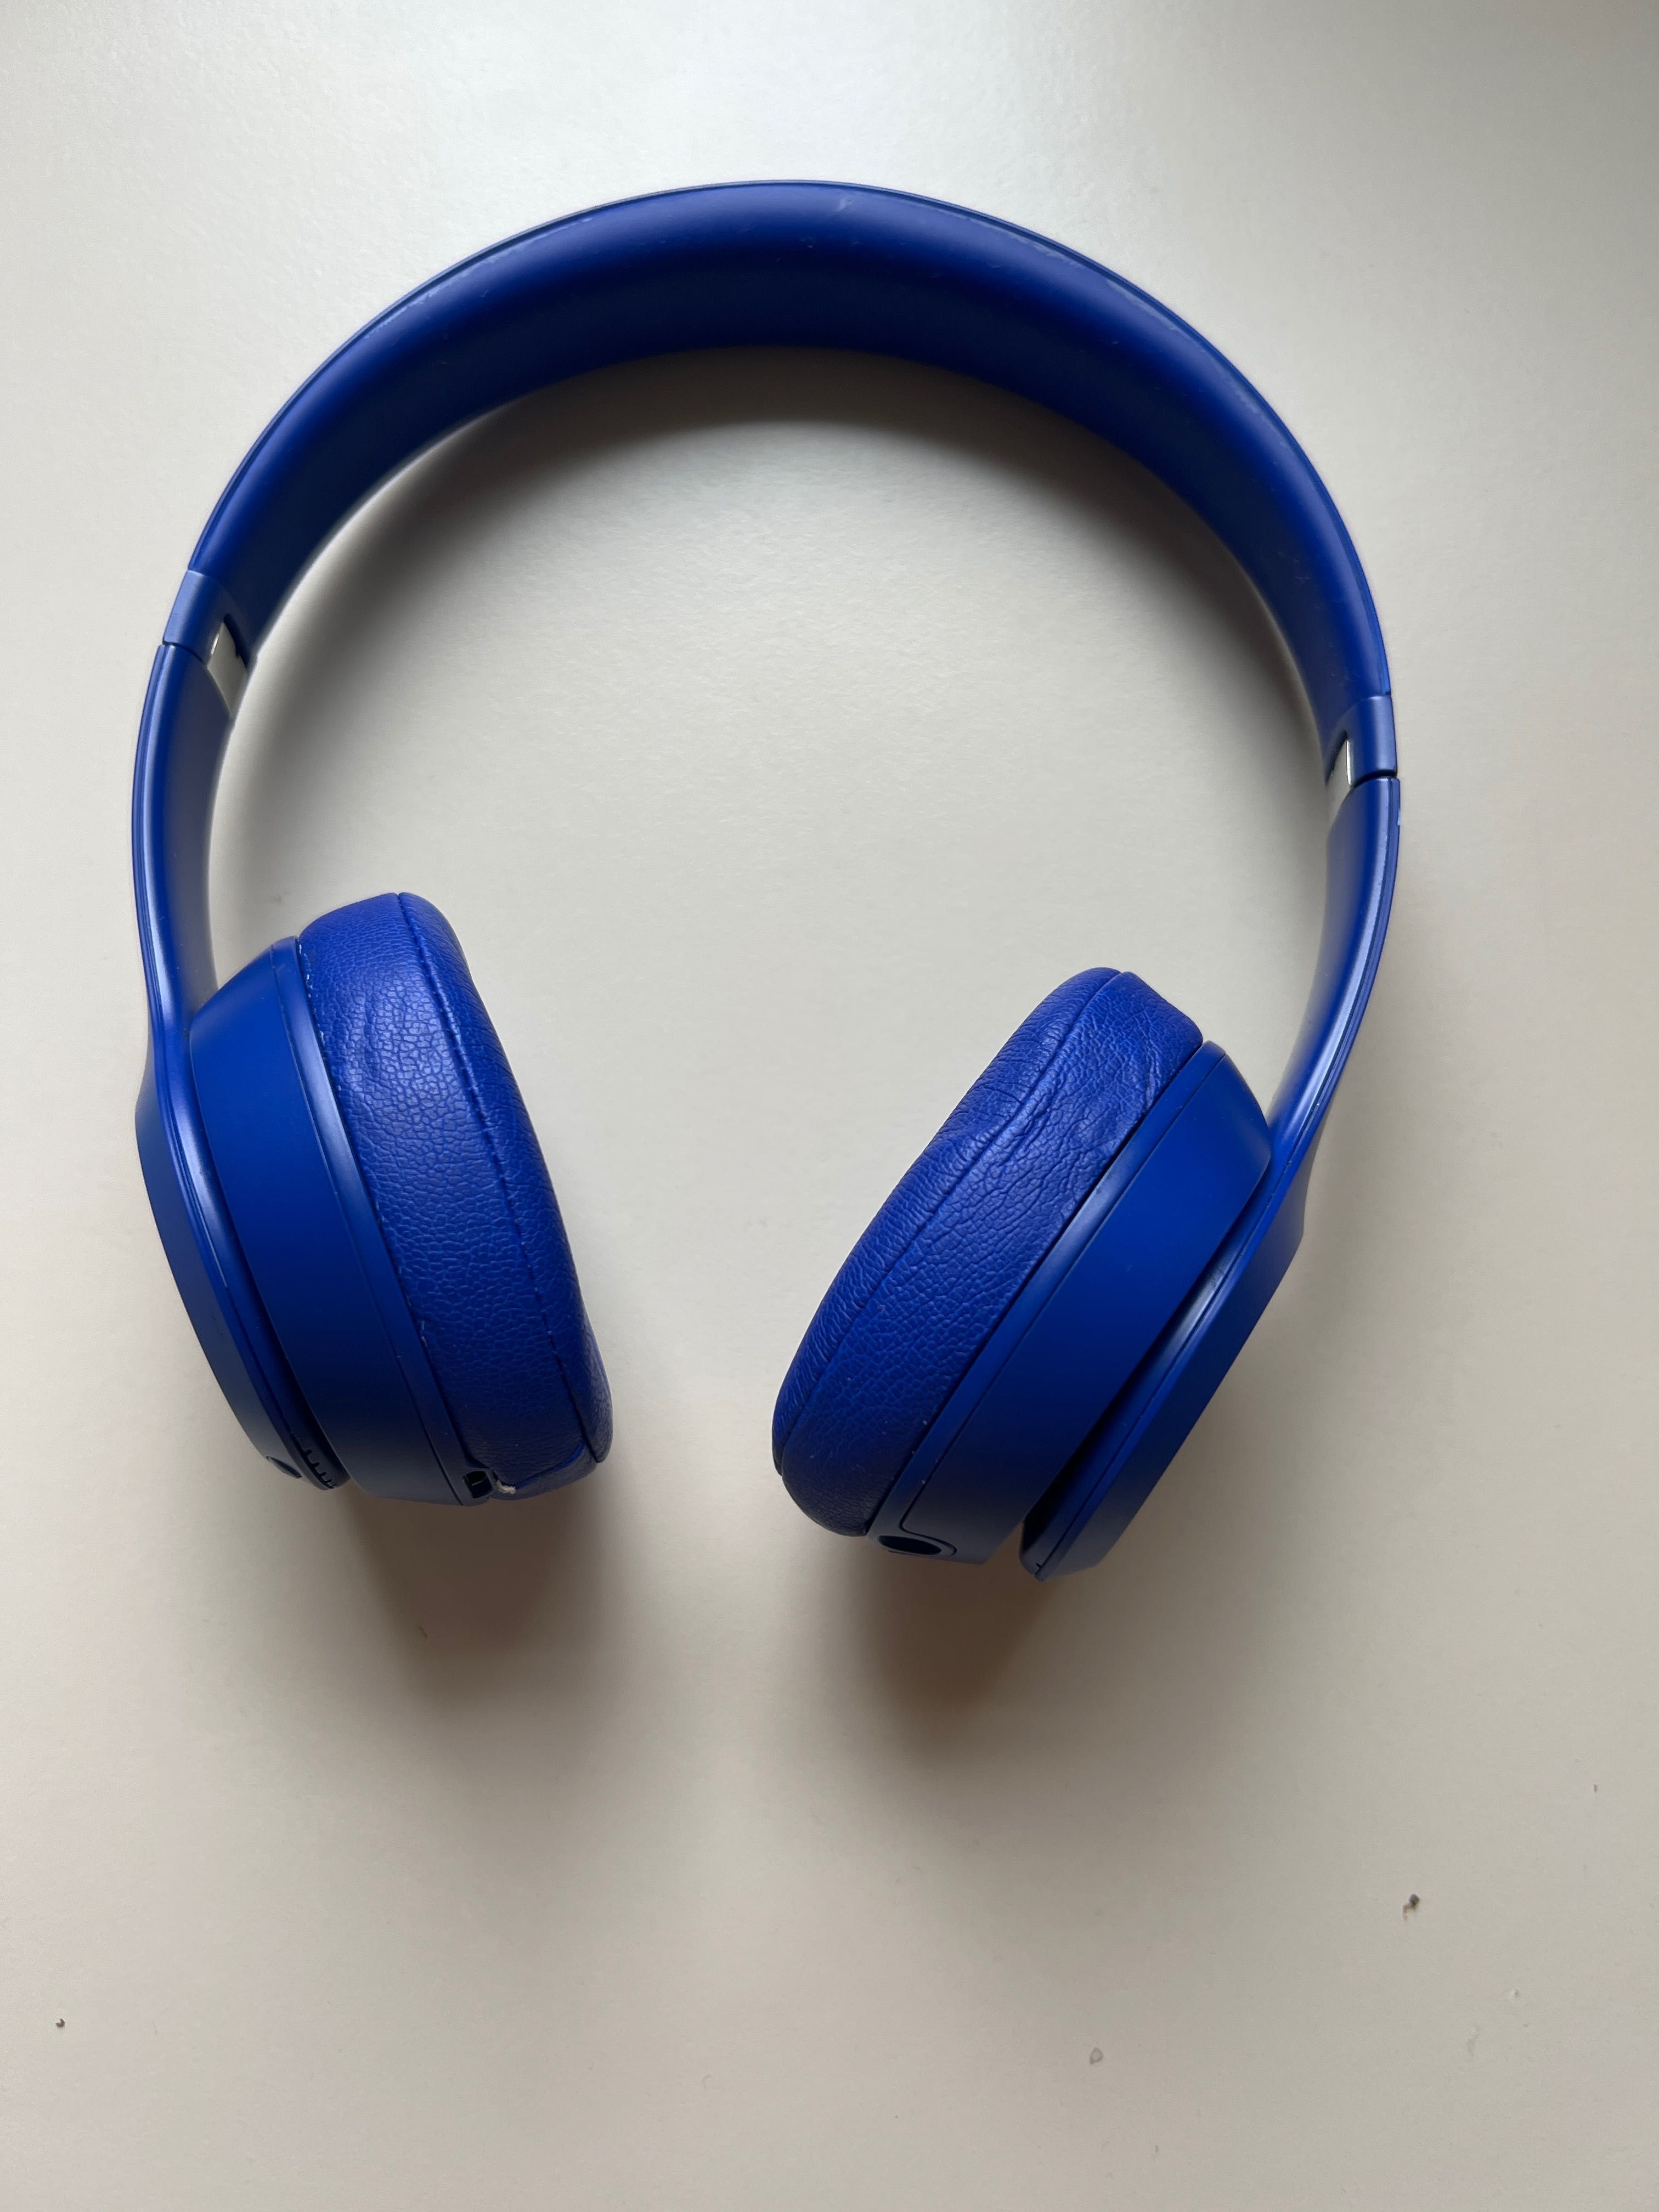 Beatssolo 3 wireless blue